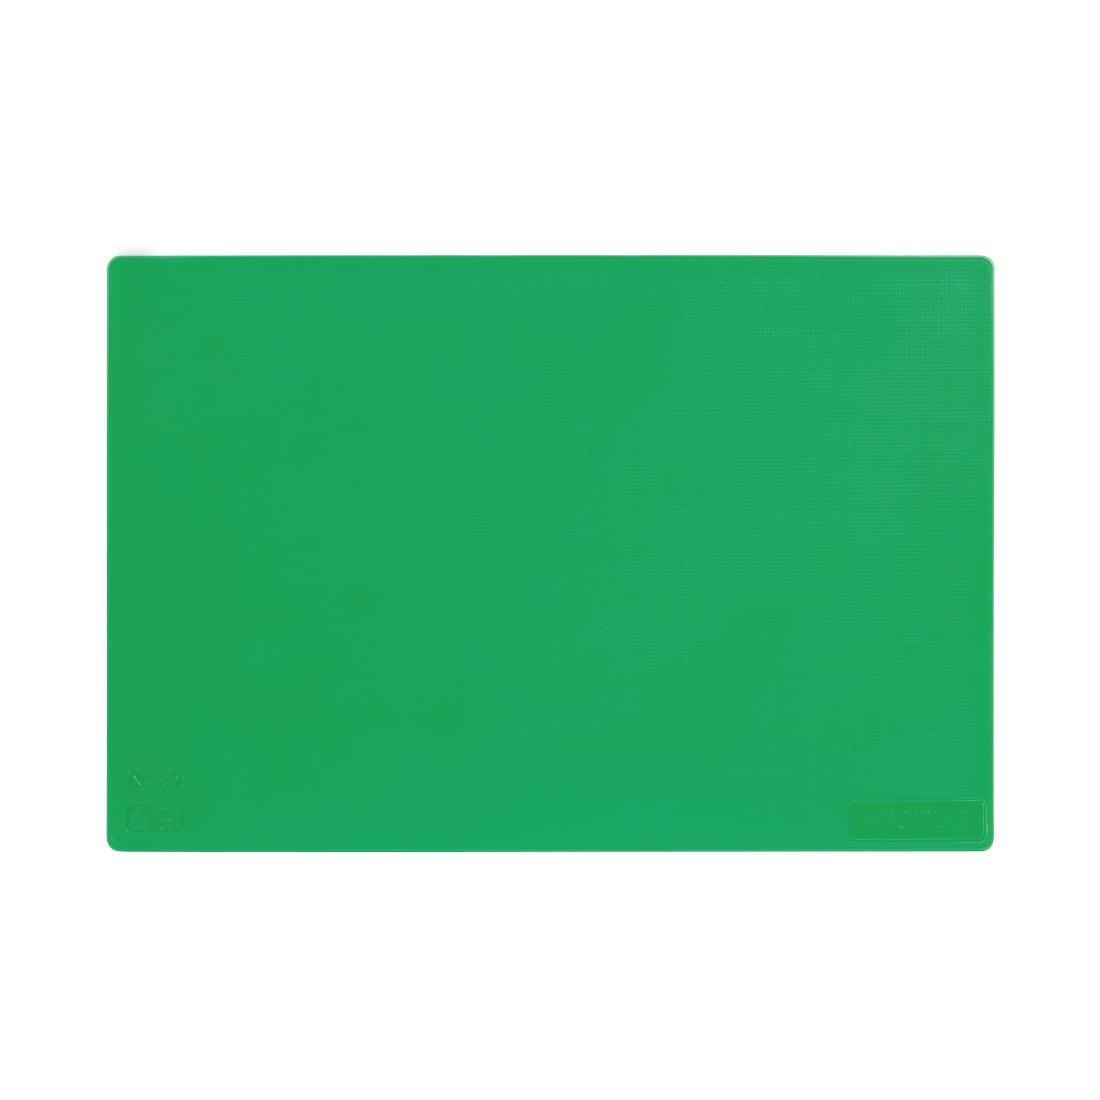 Hygiplas Low Density Green Chopping Board Standard - J253  - 2